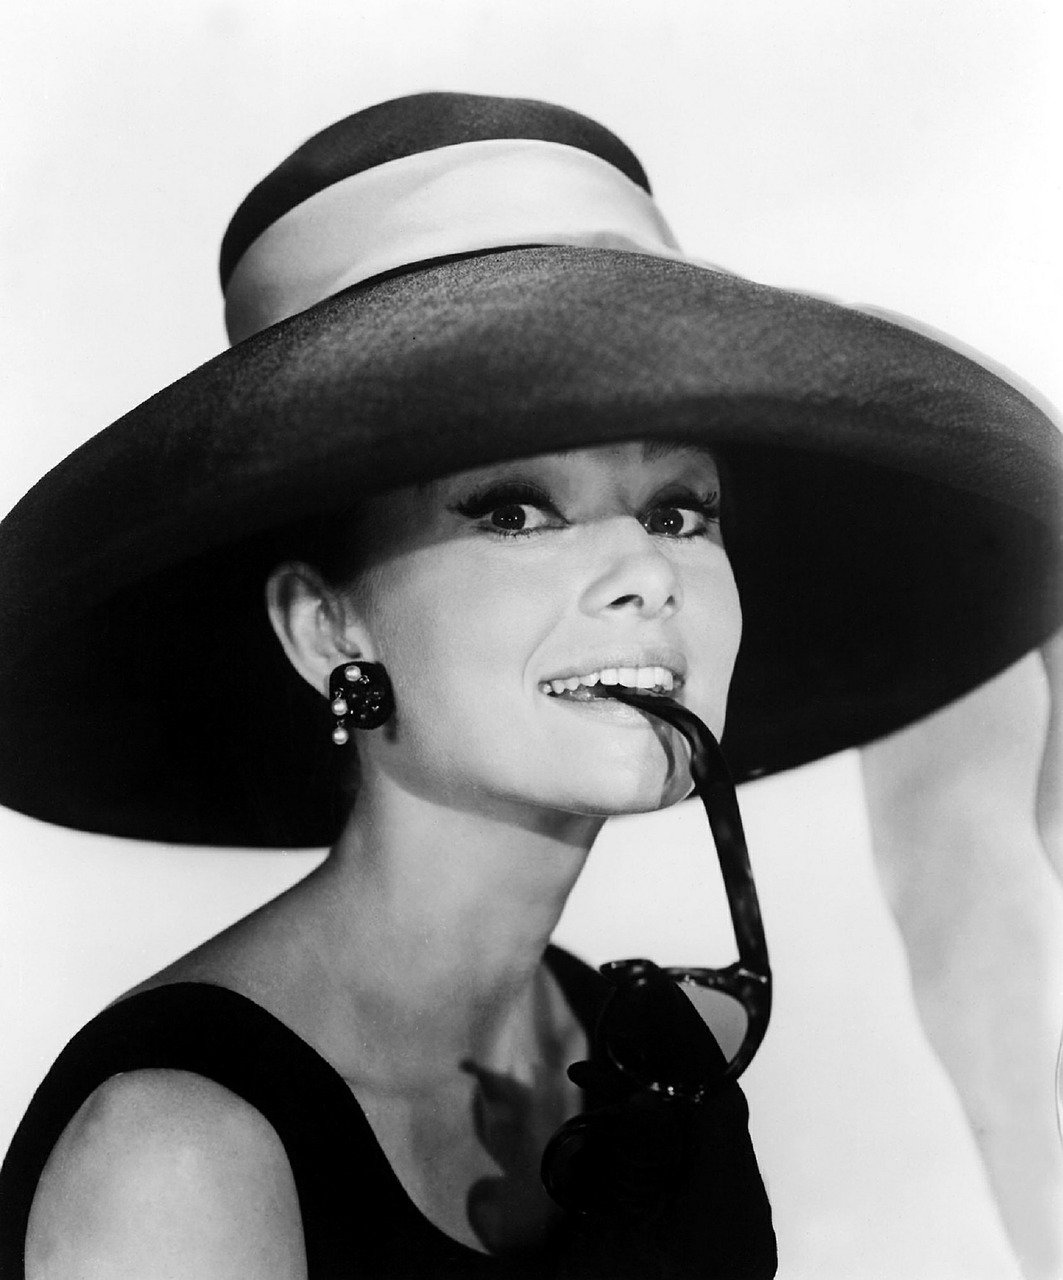 Il Diritto all’Immagine e il Caso Audrey Hepburn